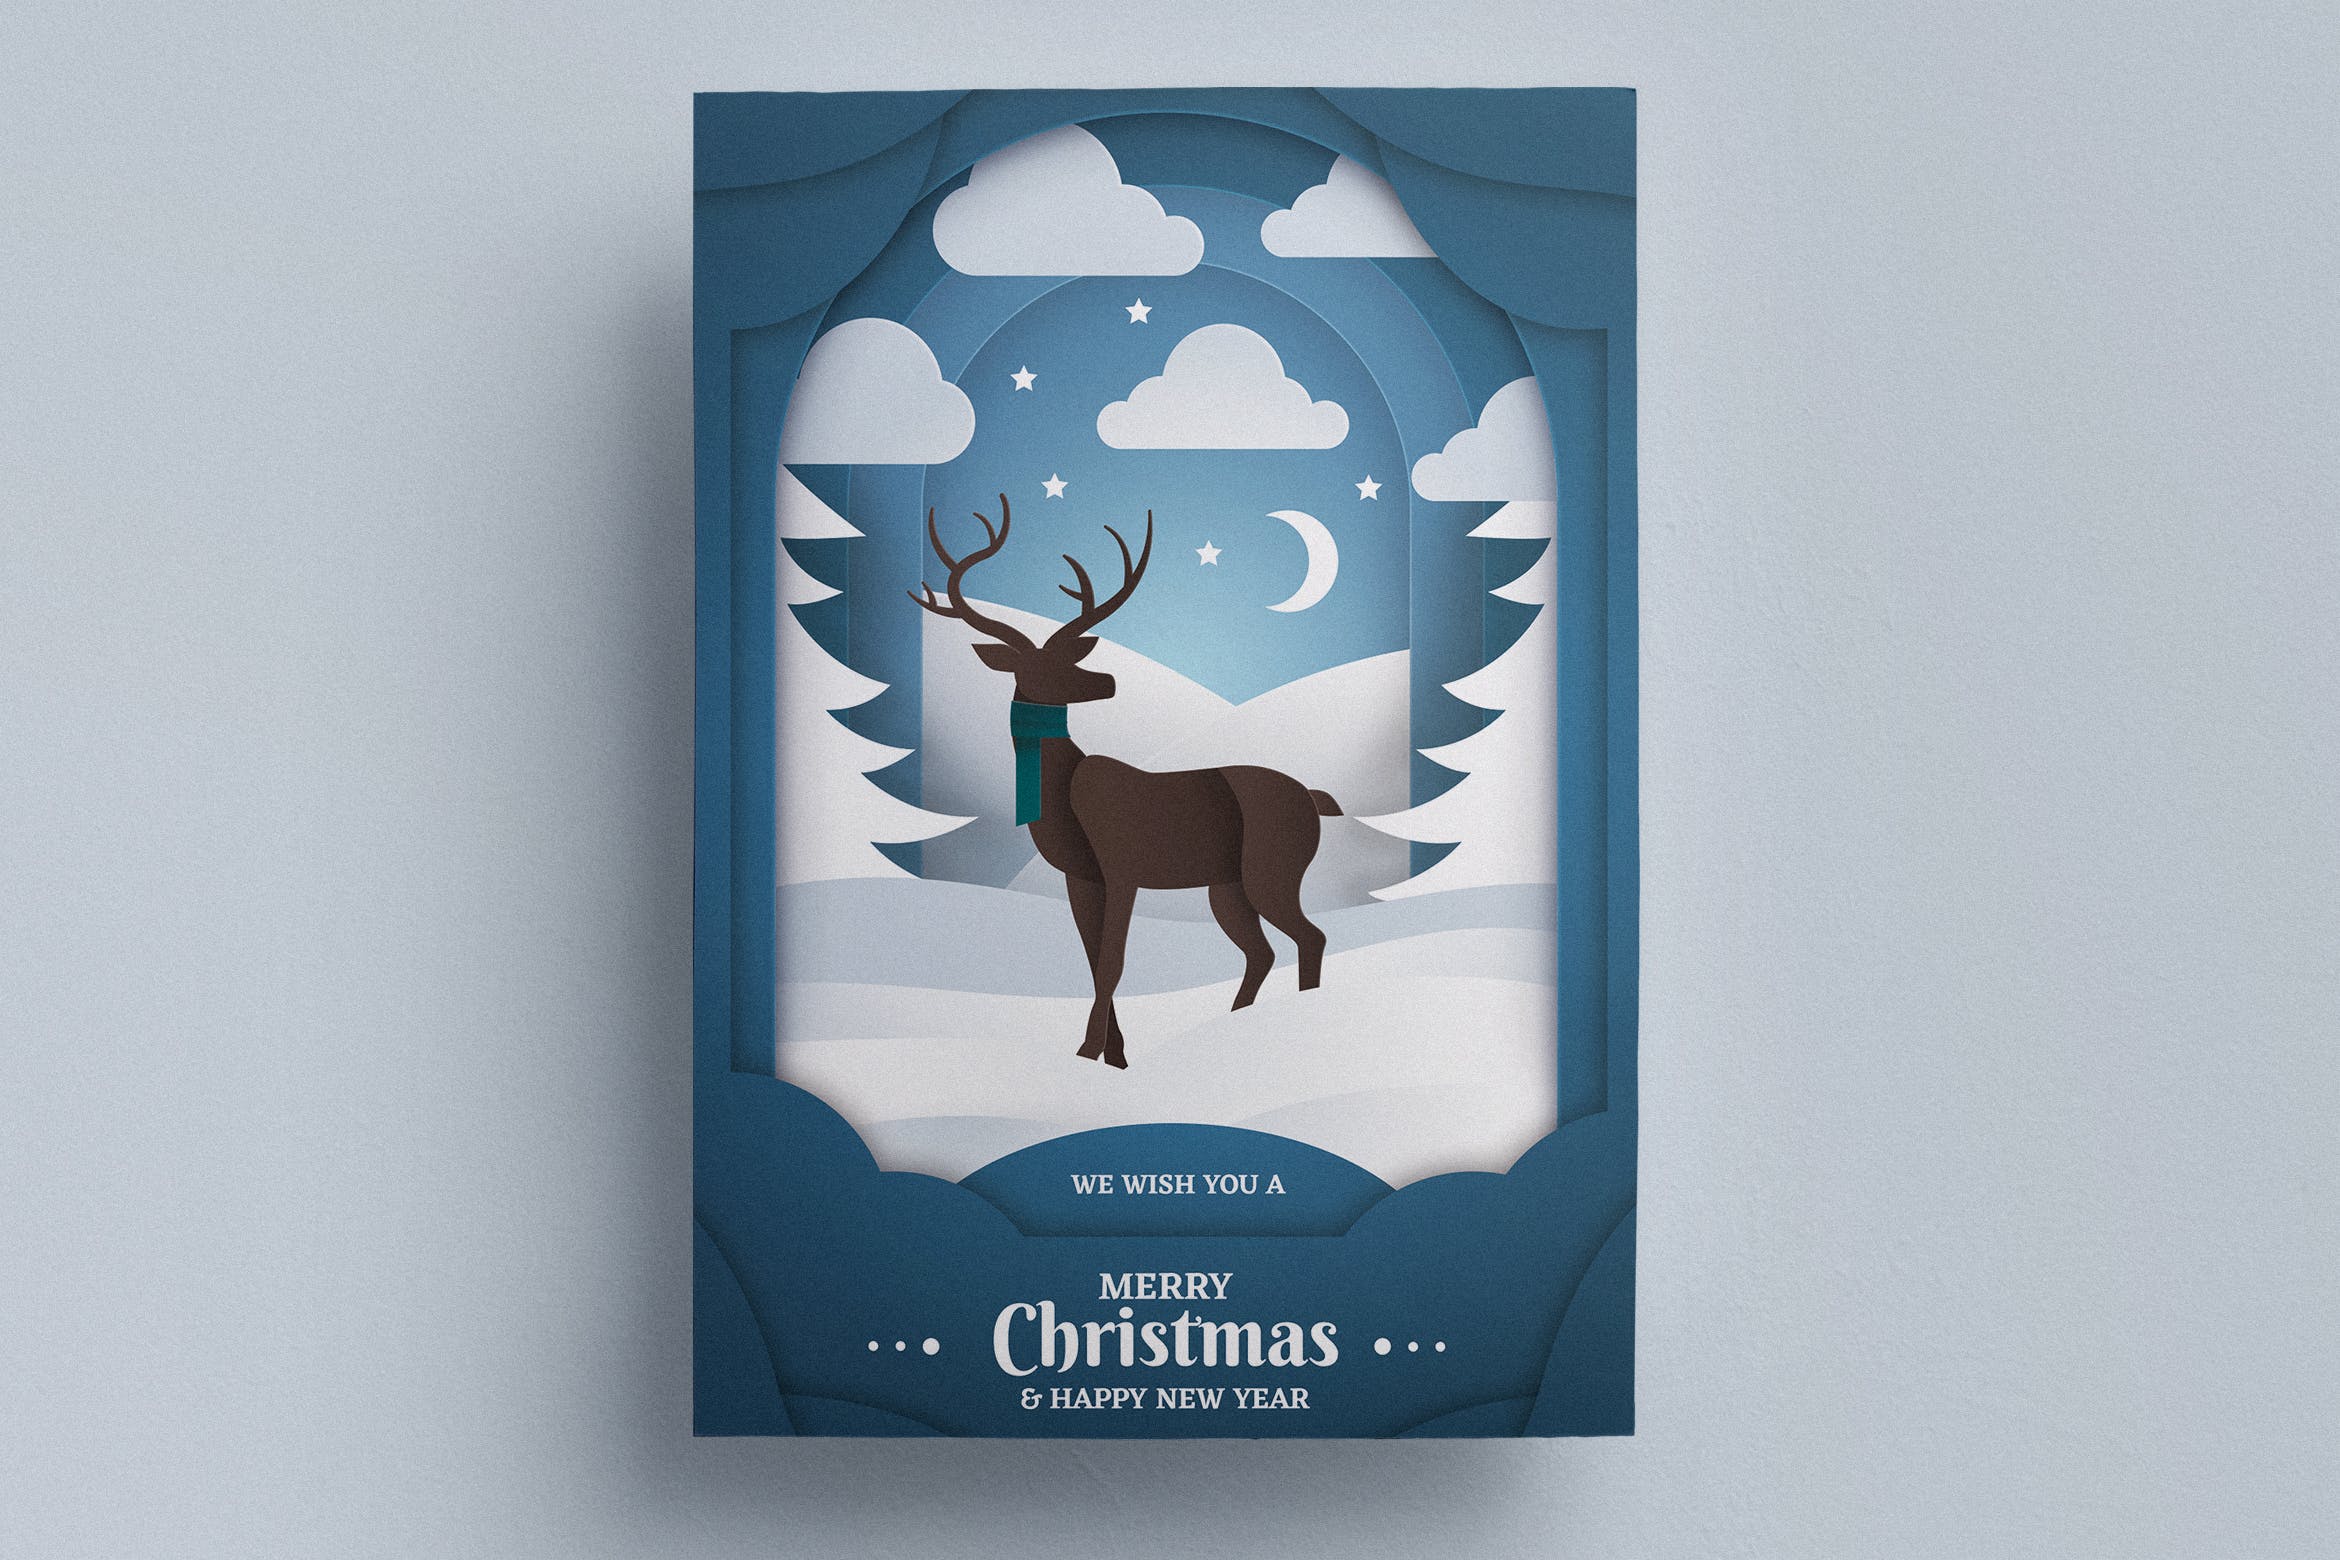 立体剪纸艺术圣诞节传单海报设计模板v2 Paper Art Christmas Flyer Template插图